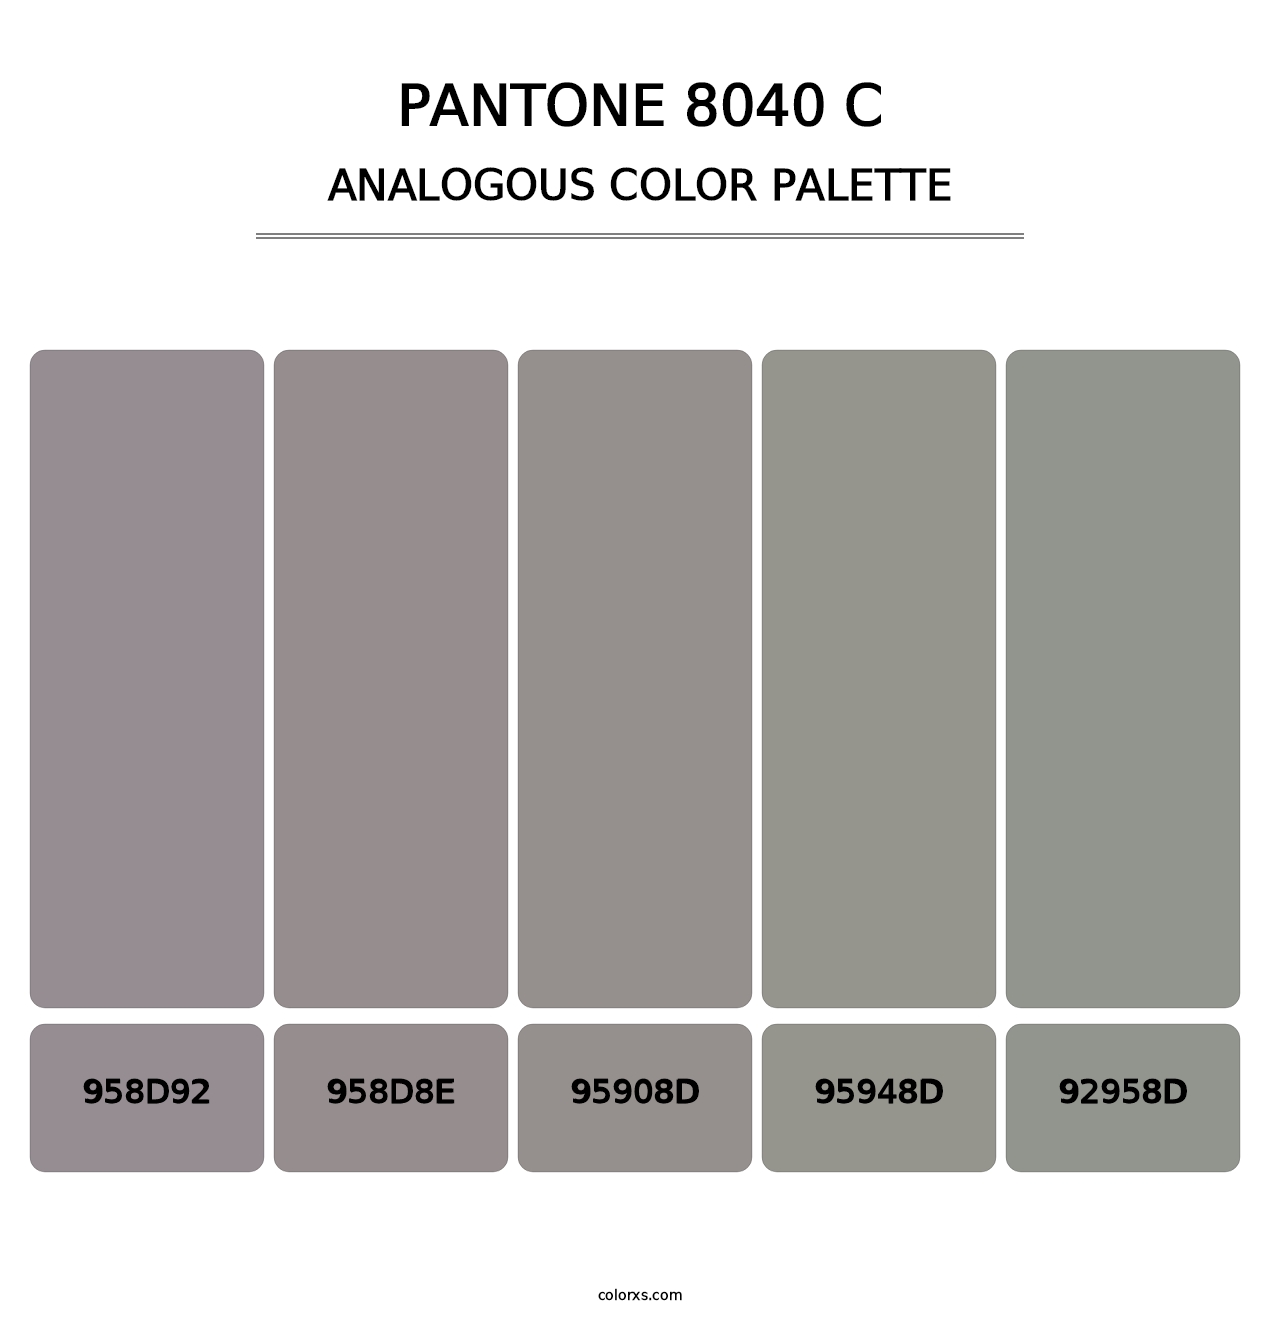 PANTONE 8040 C - Analogous Color Palette